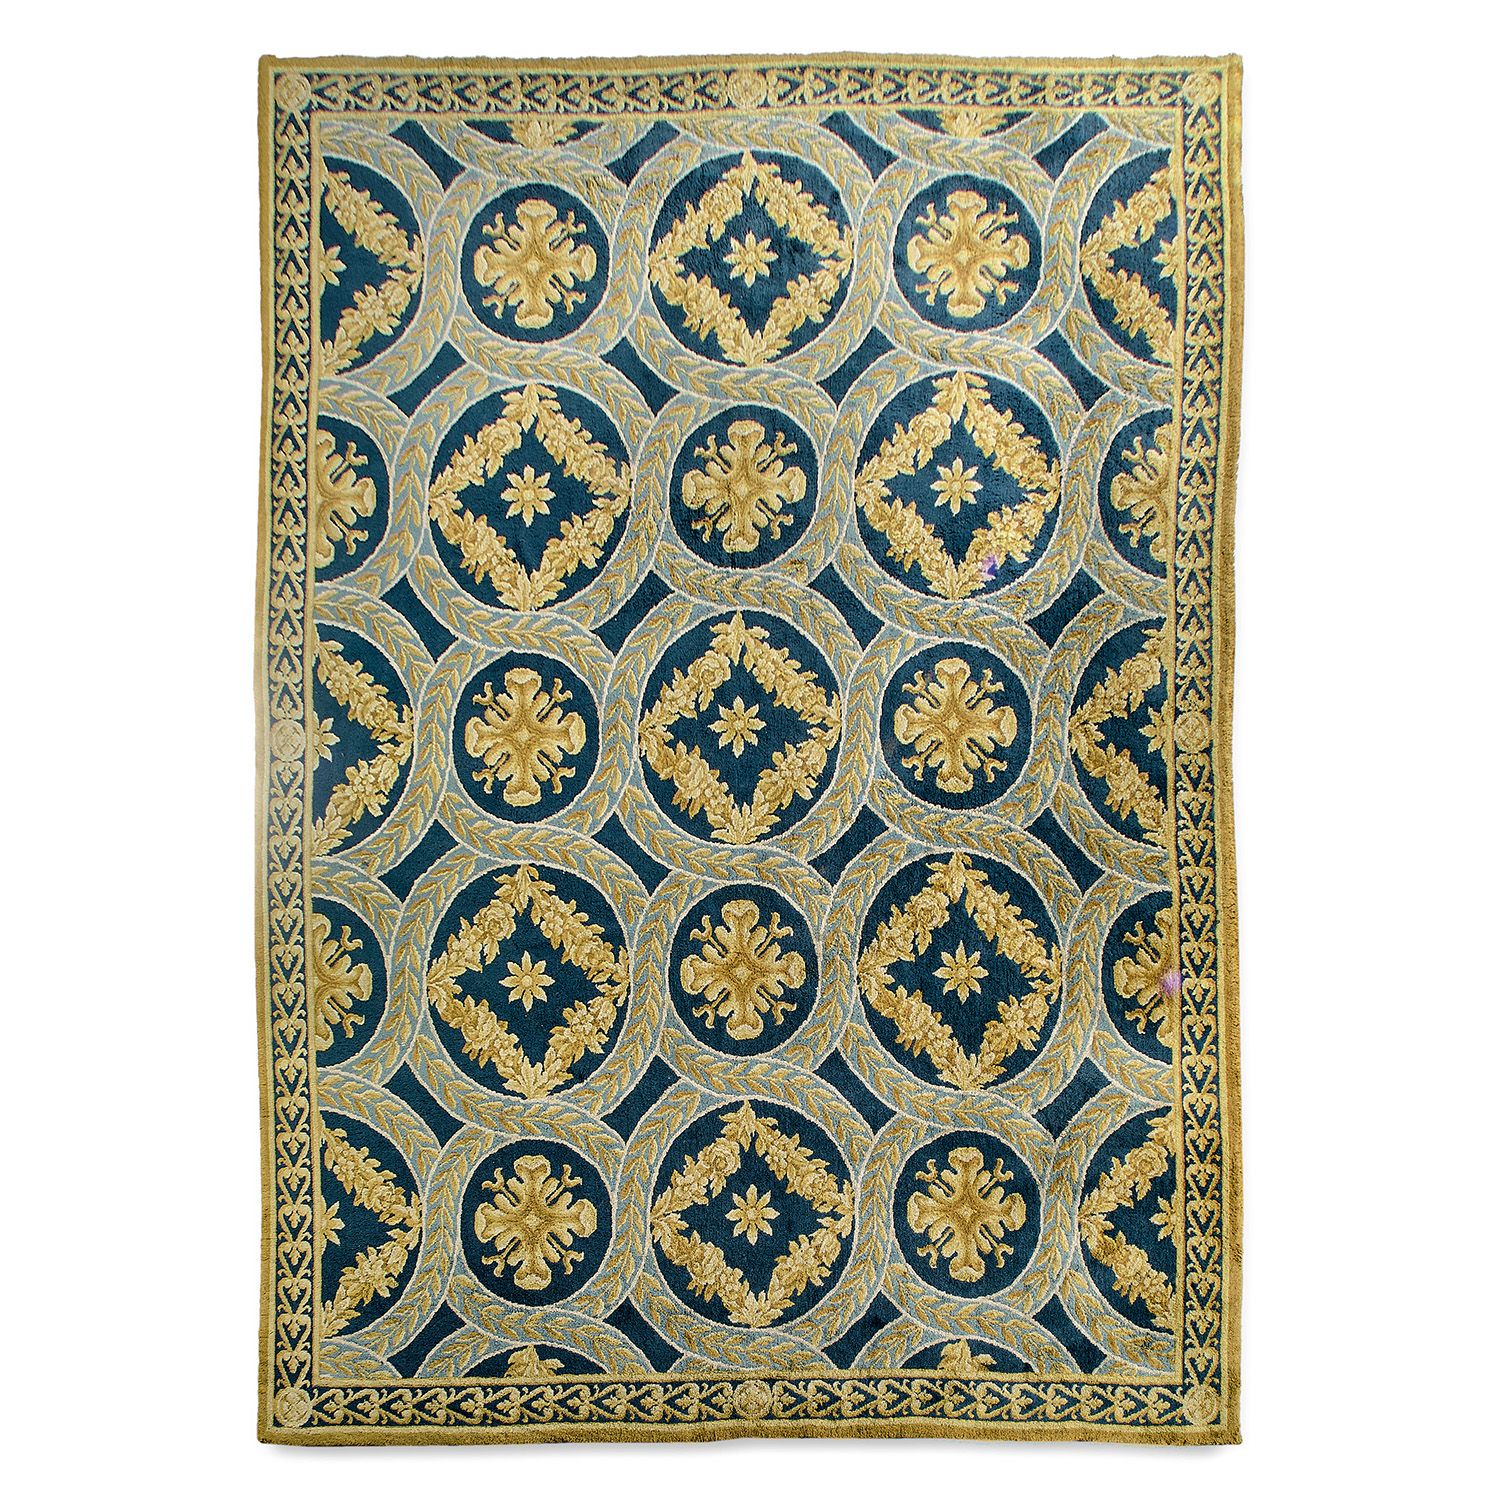 Null 窄缝地毯，奥布森，20世纪中叶，新拉西亚风格
蓝色的背景，装饰着花朵，花环的丝带形成了一个网络的奖章，交错的边界，藏红花黄色的辫子。
20世纪中期新古&hellip;